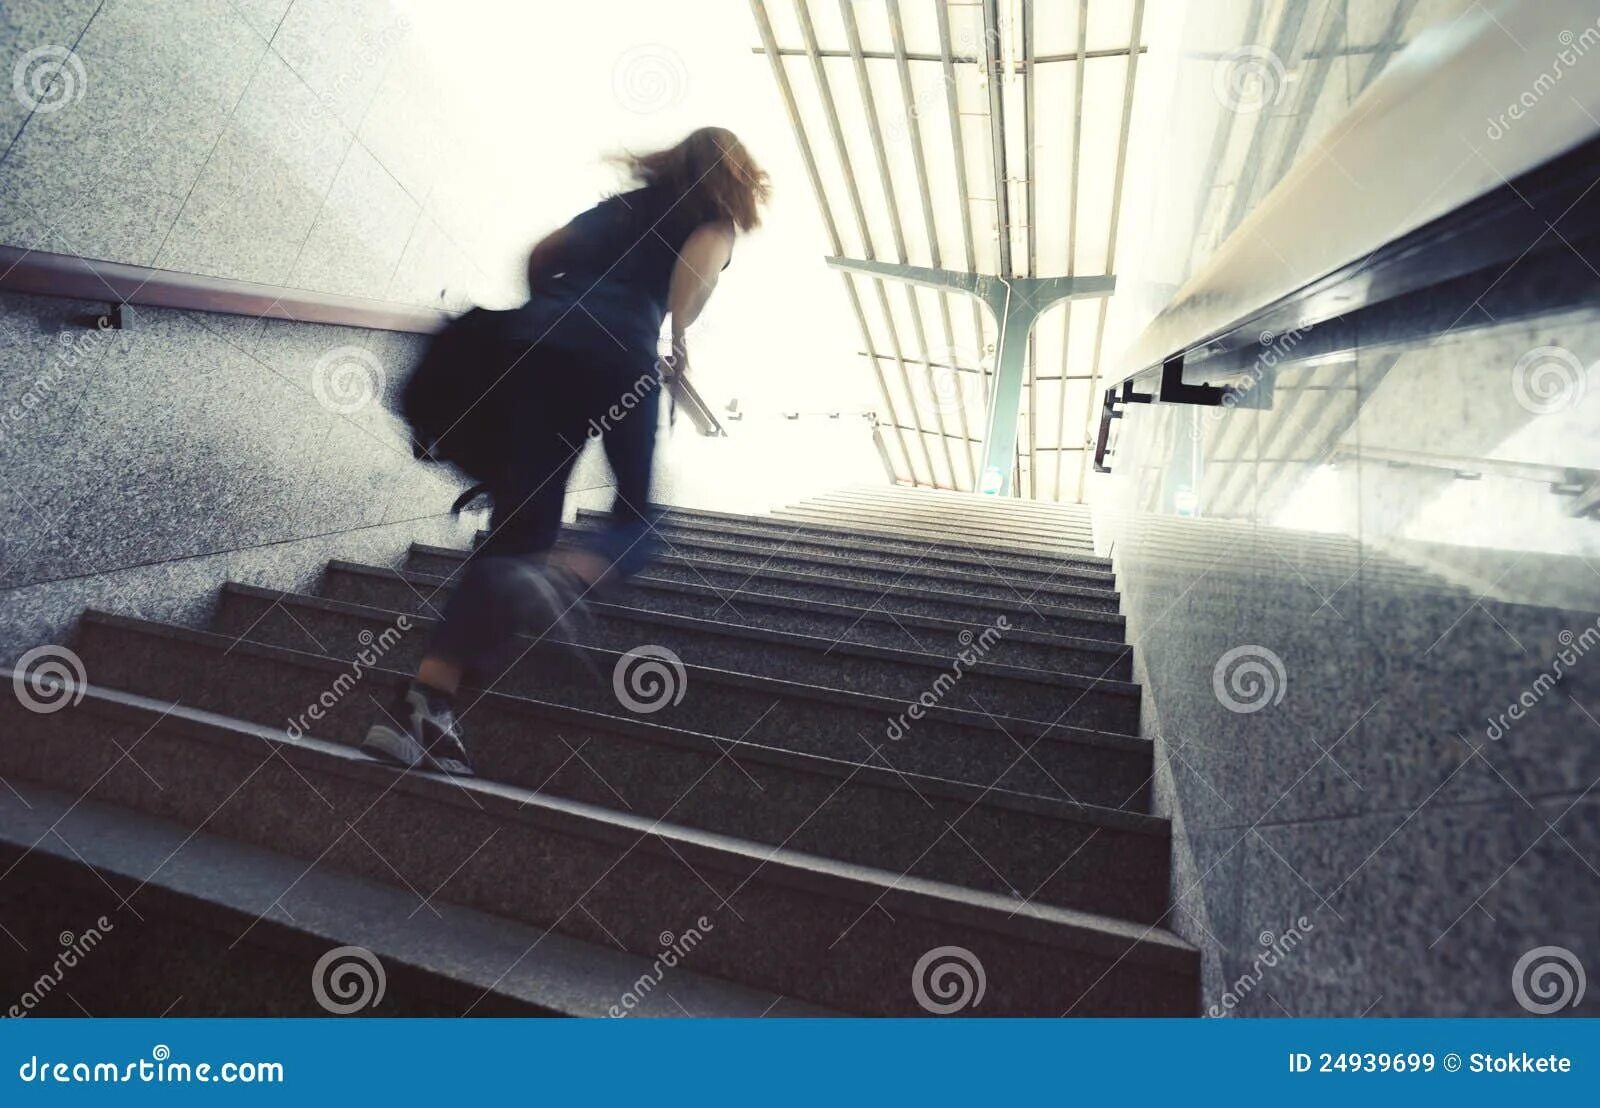 Дамы потихоньку пошли за поднимавшимся по лестнице. Девушка бежит по лестнице. Девушка убегает по лестнице. Девушка идет по лестнице вверх. Женщина на ступеньках здания.